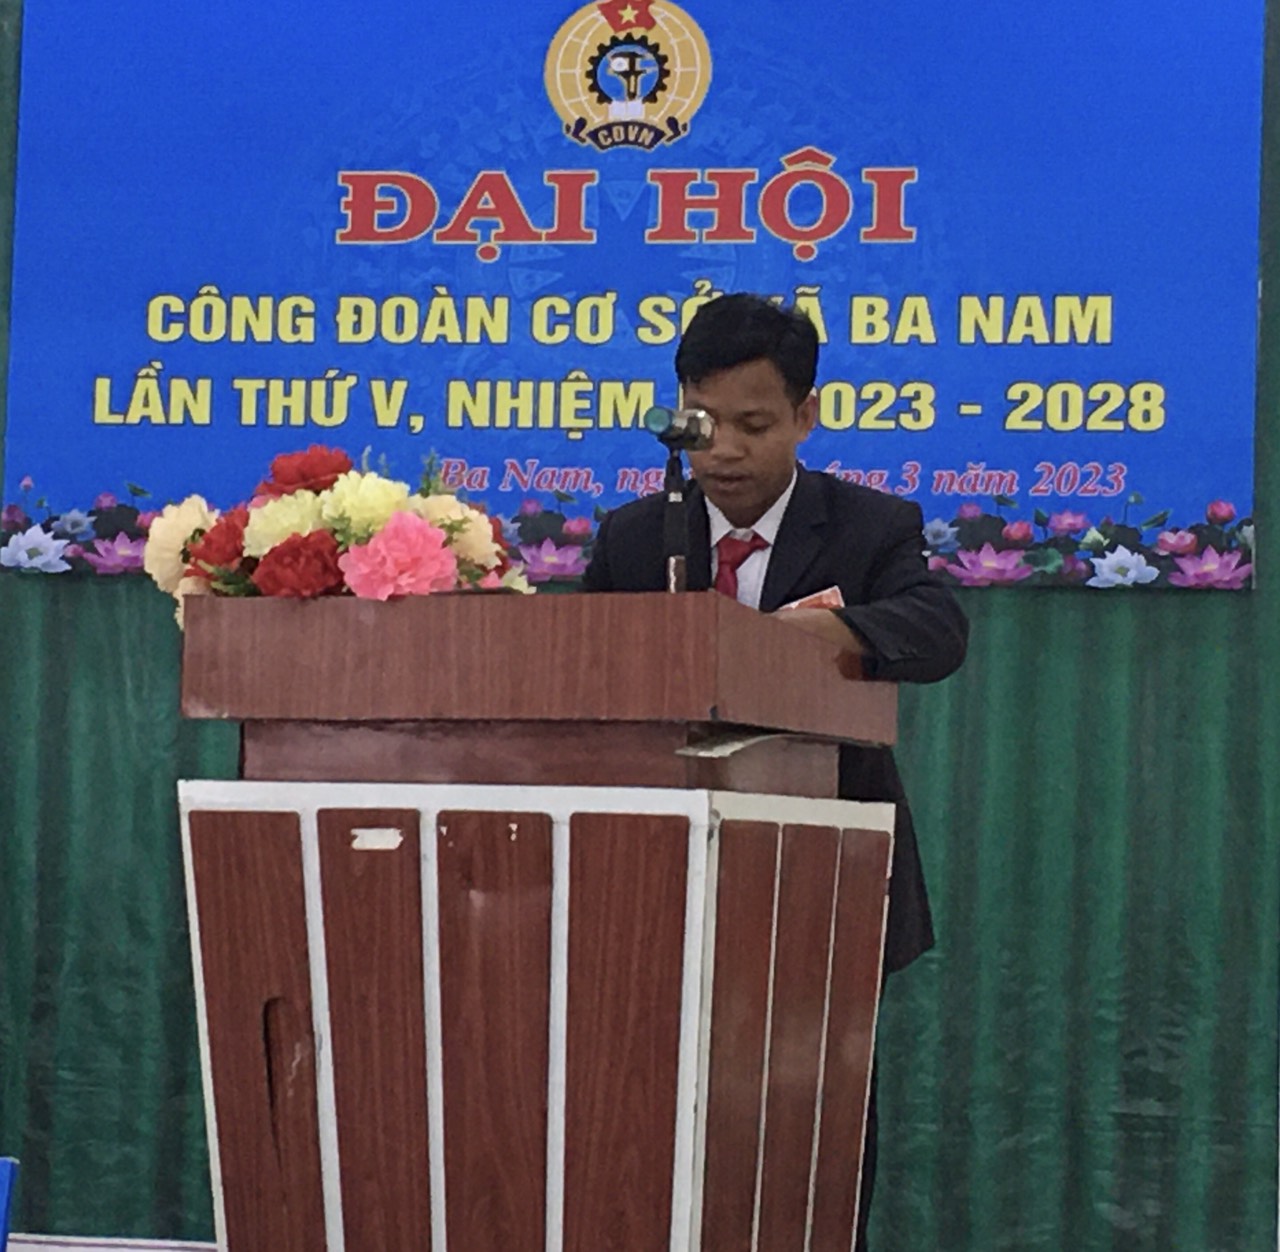 Đồng chí Phạm Văn Náy, PCT UBND xã - CT CĐCS xã Ba Nam nhiệm kỳ 2017-2023 phát biểu khai mạc Đại hội